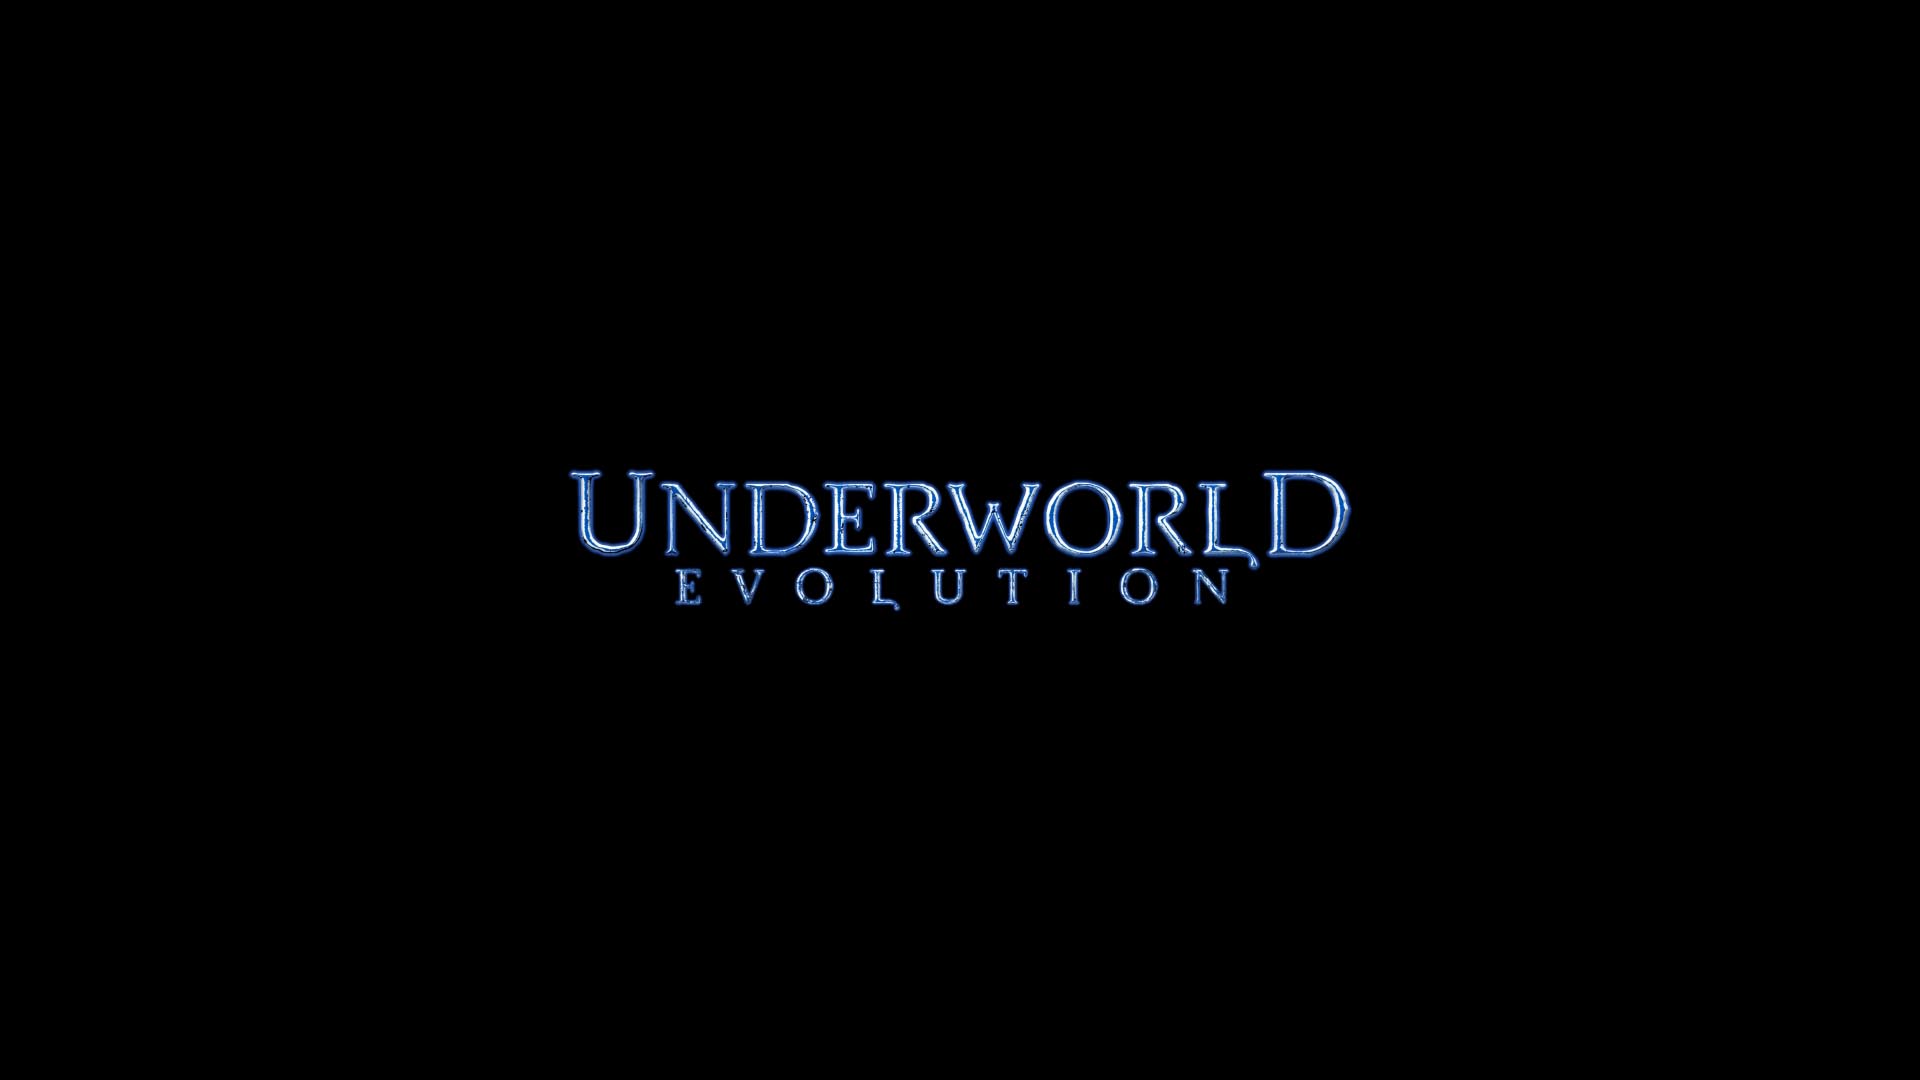 Free download wallpaper Movie, Underworld: Evolution on your PC desktop